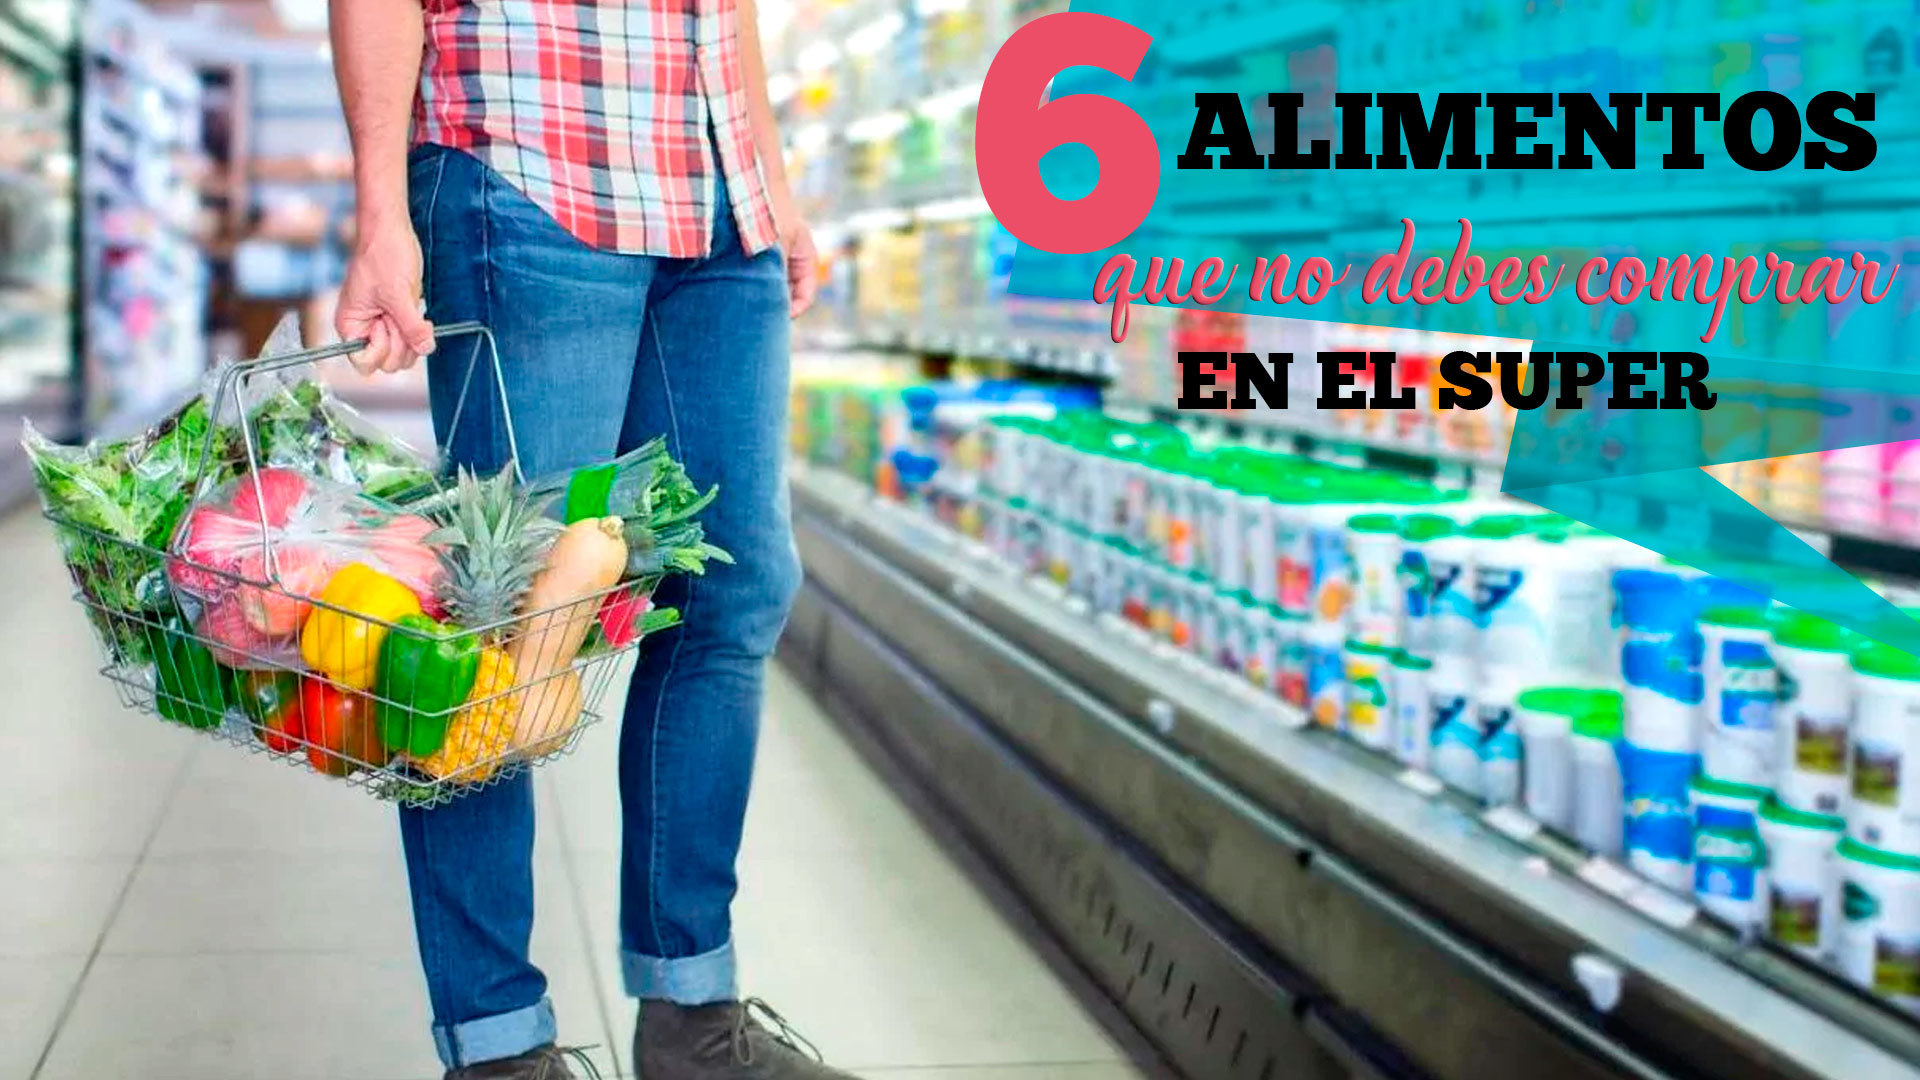 Temporada 1 6 Alimentos que no deberías comprar en el supermercado